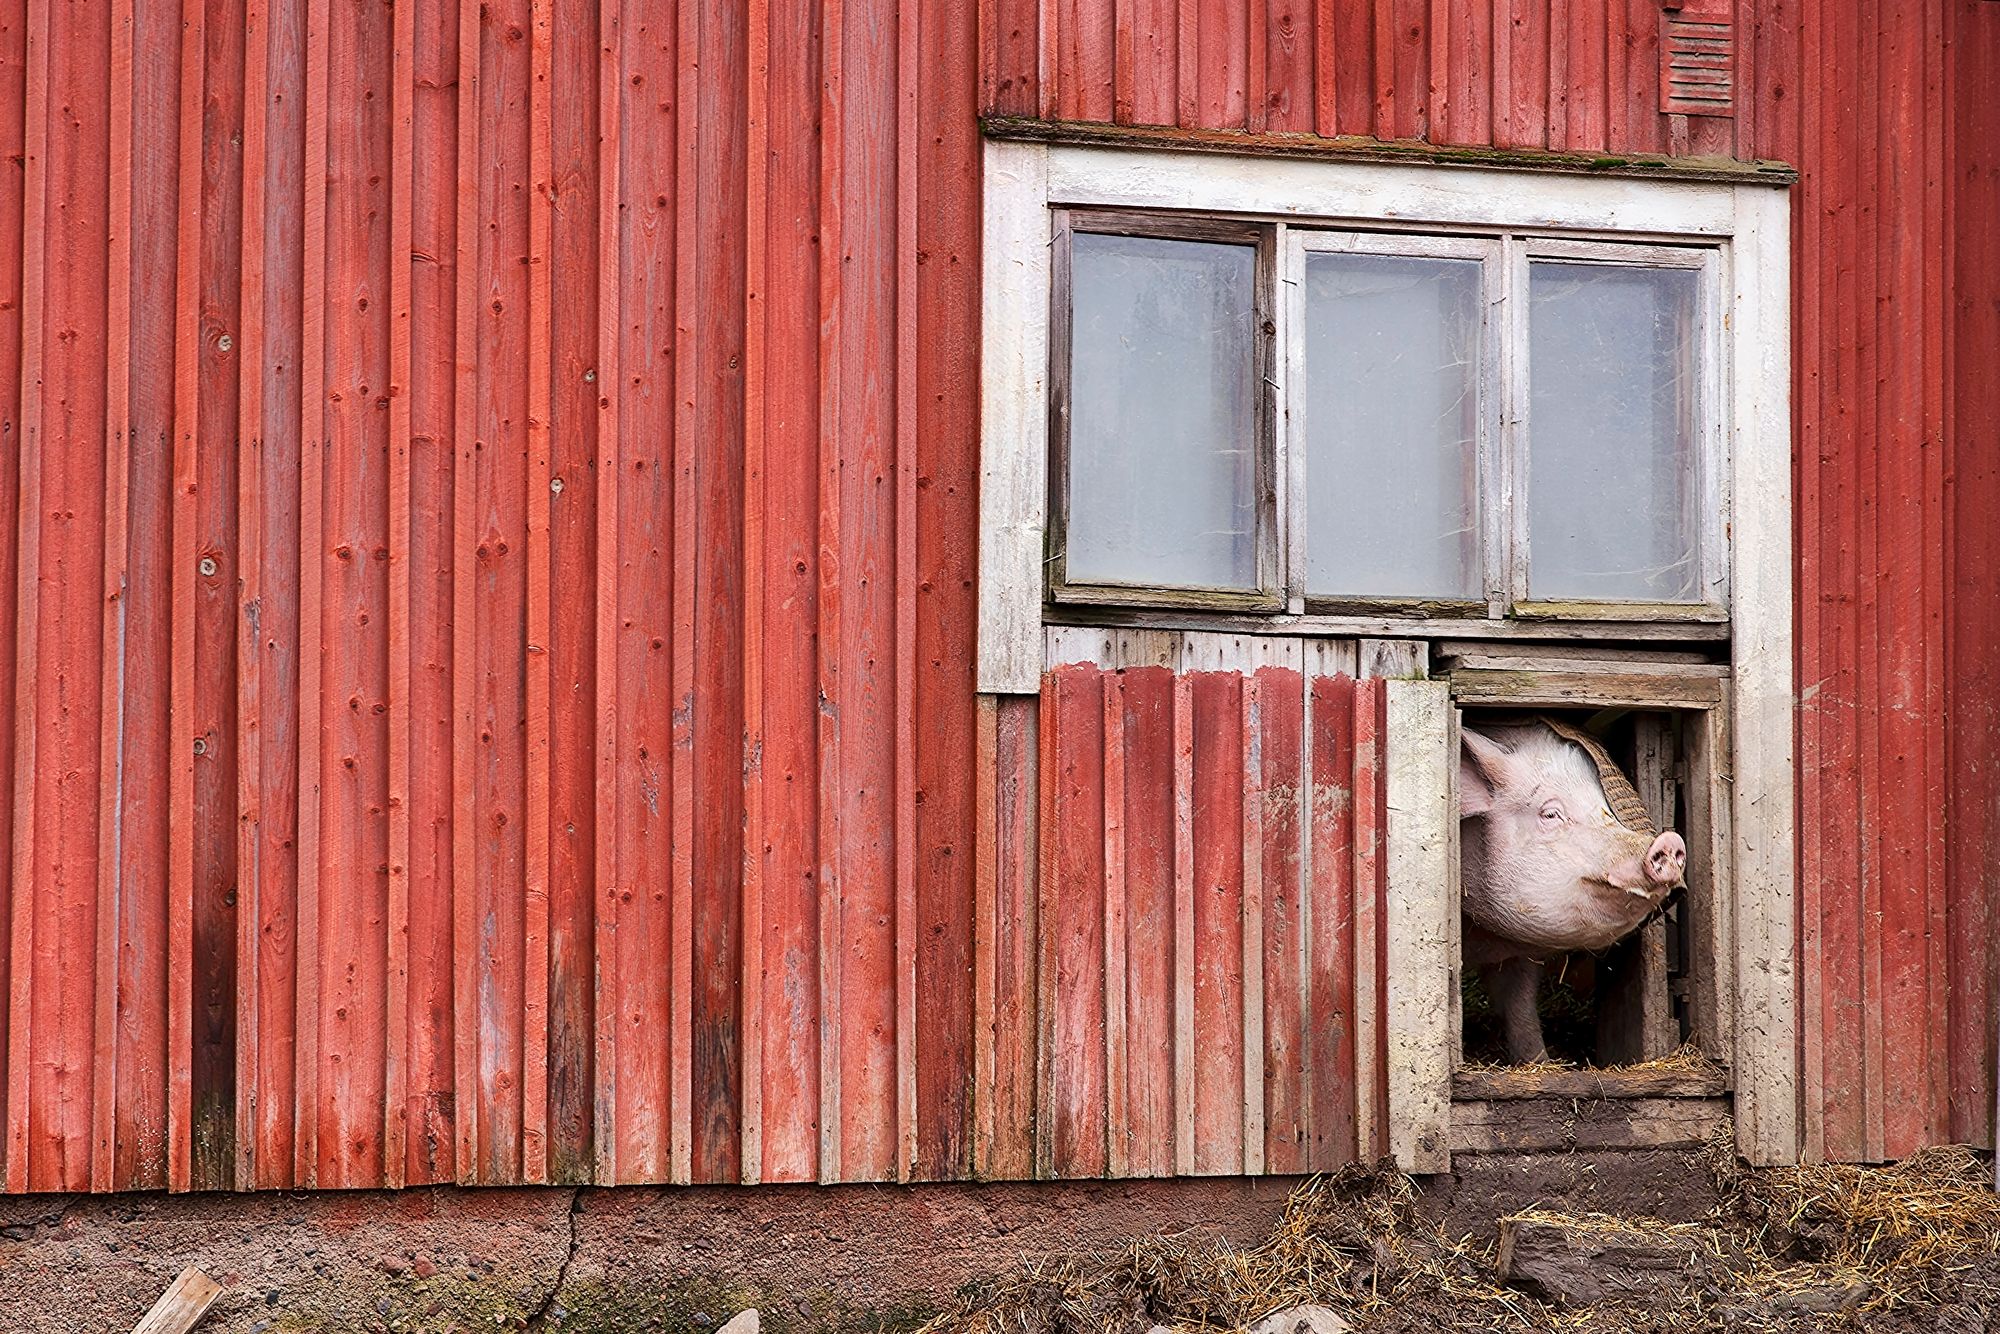 Tuulispäässä asuu myös entisiä tuotantoeläimiä. Saara-sikaa jännittää korkea kynnys, jonka se ylittää vain kun sillä on kova nälkä. Siat ruokitaan ulkona. © Tommi Tuomi